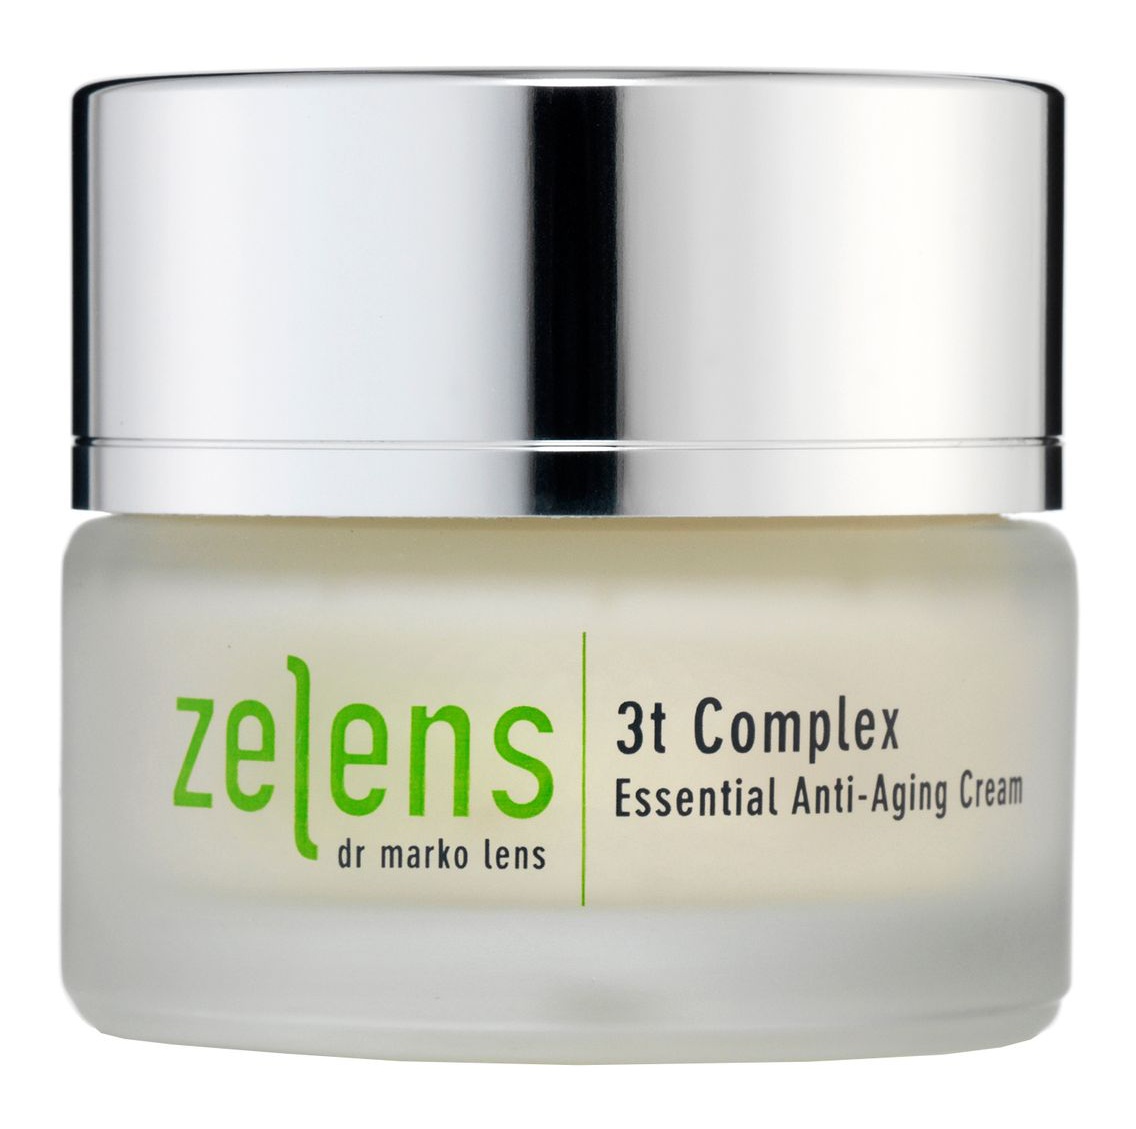 Zelens 3T Complex Essential Anti-Aging Cream